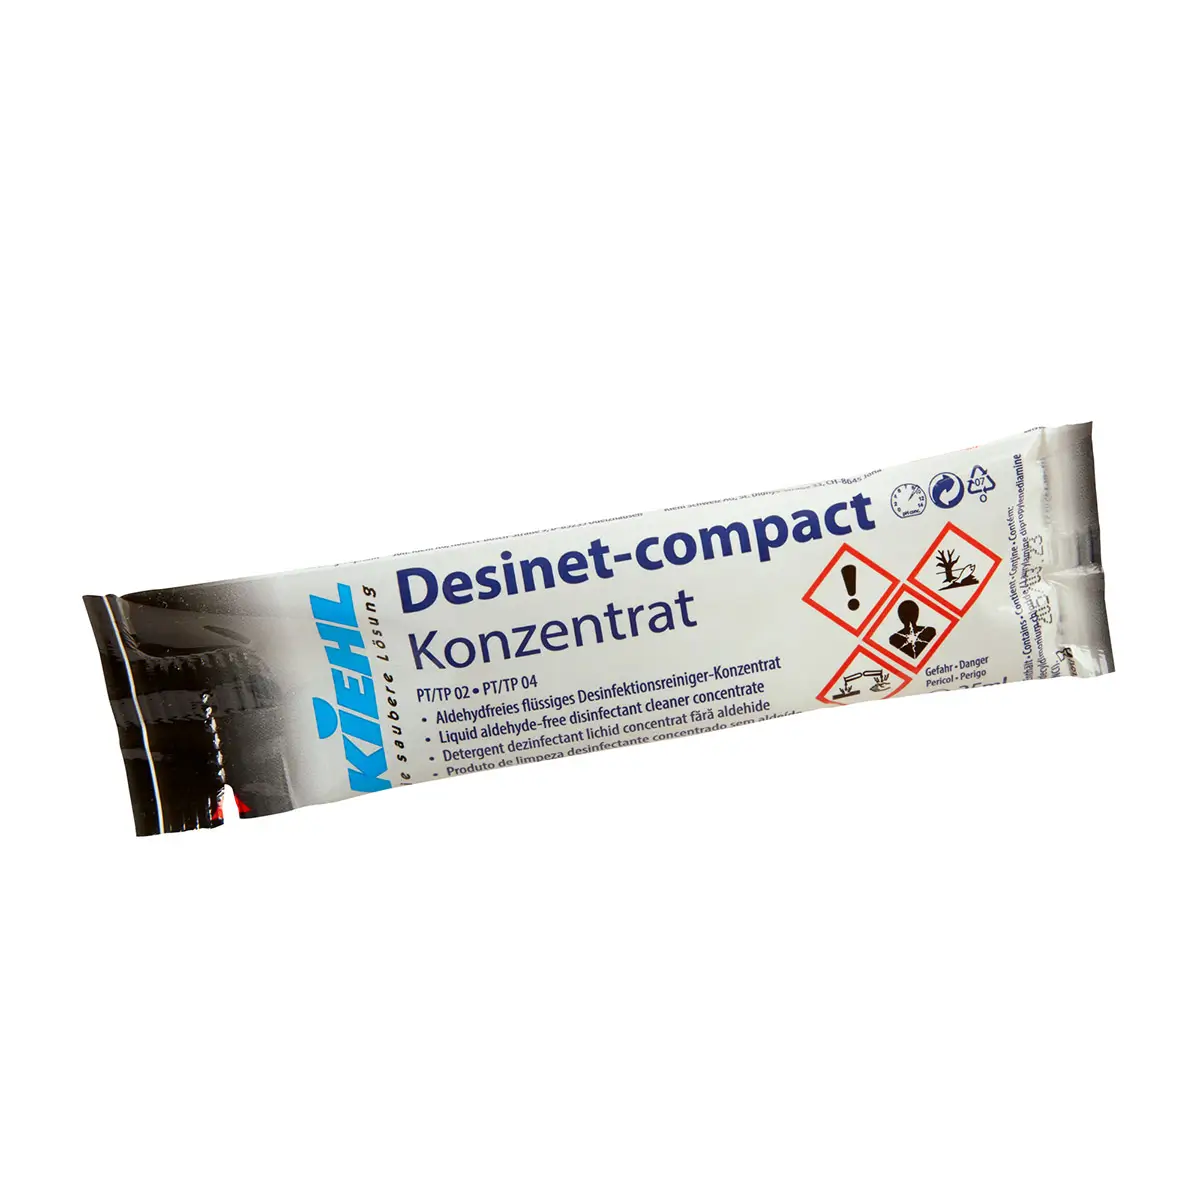 Kiehl Desinet-Compact Desinfektionsreiniger-Konzentrat Dosierbeutel 80x25ml